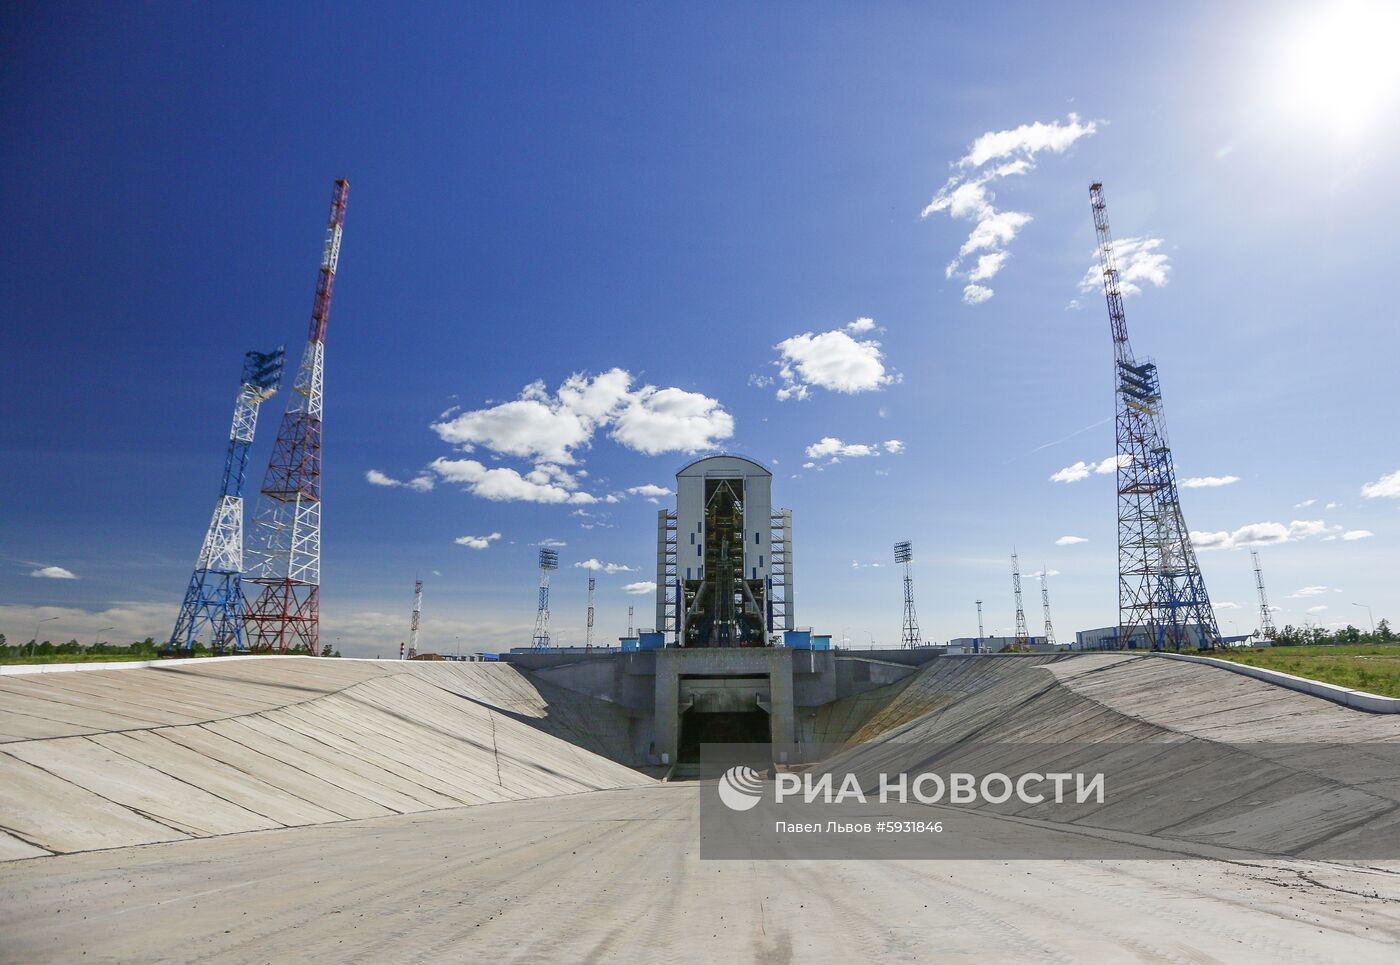 Сборка головной части РКН "Союз-2.1б" с КА "Метеор-М" на космодроме Восточный.